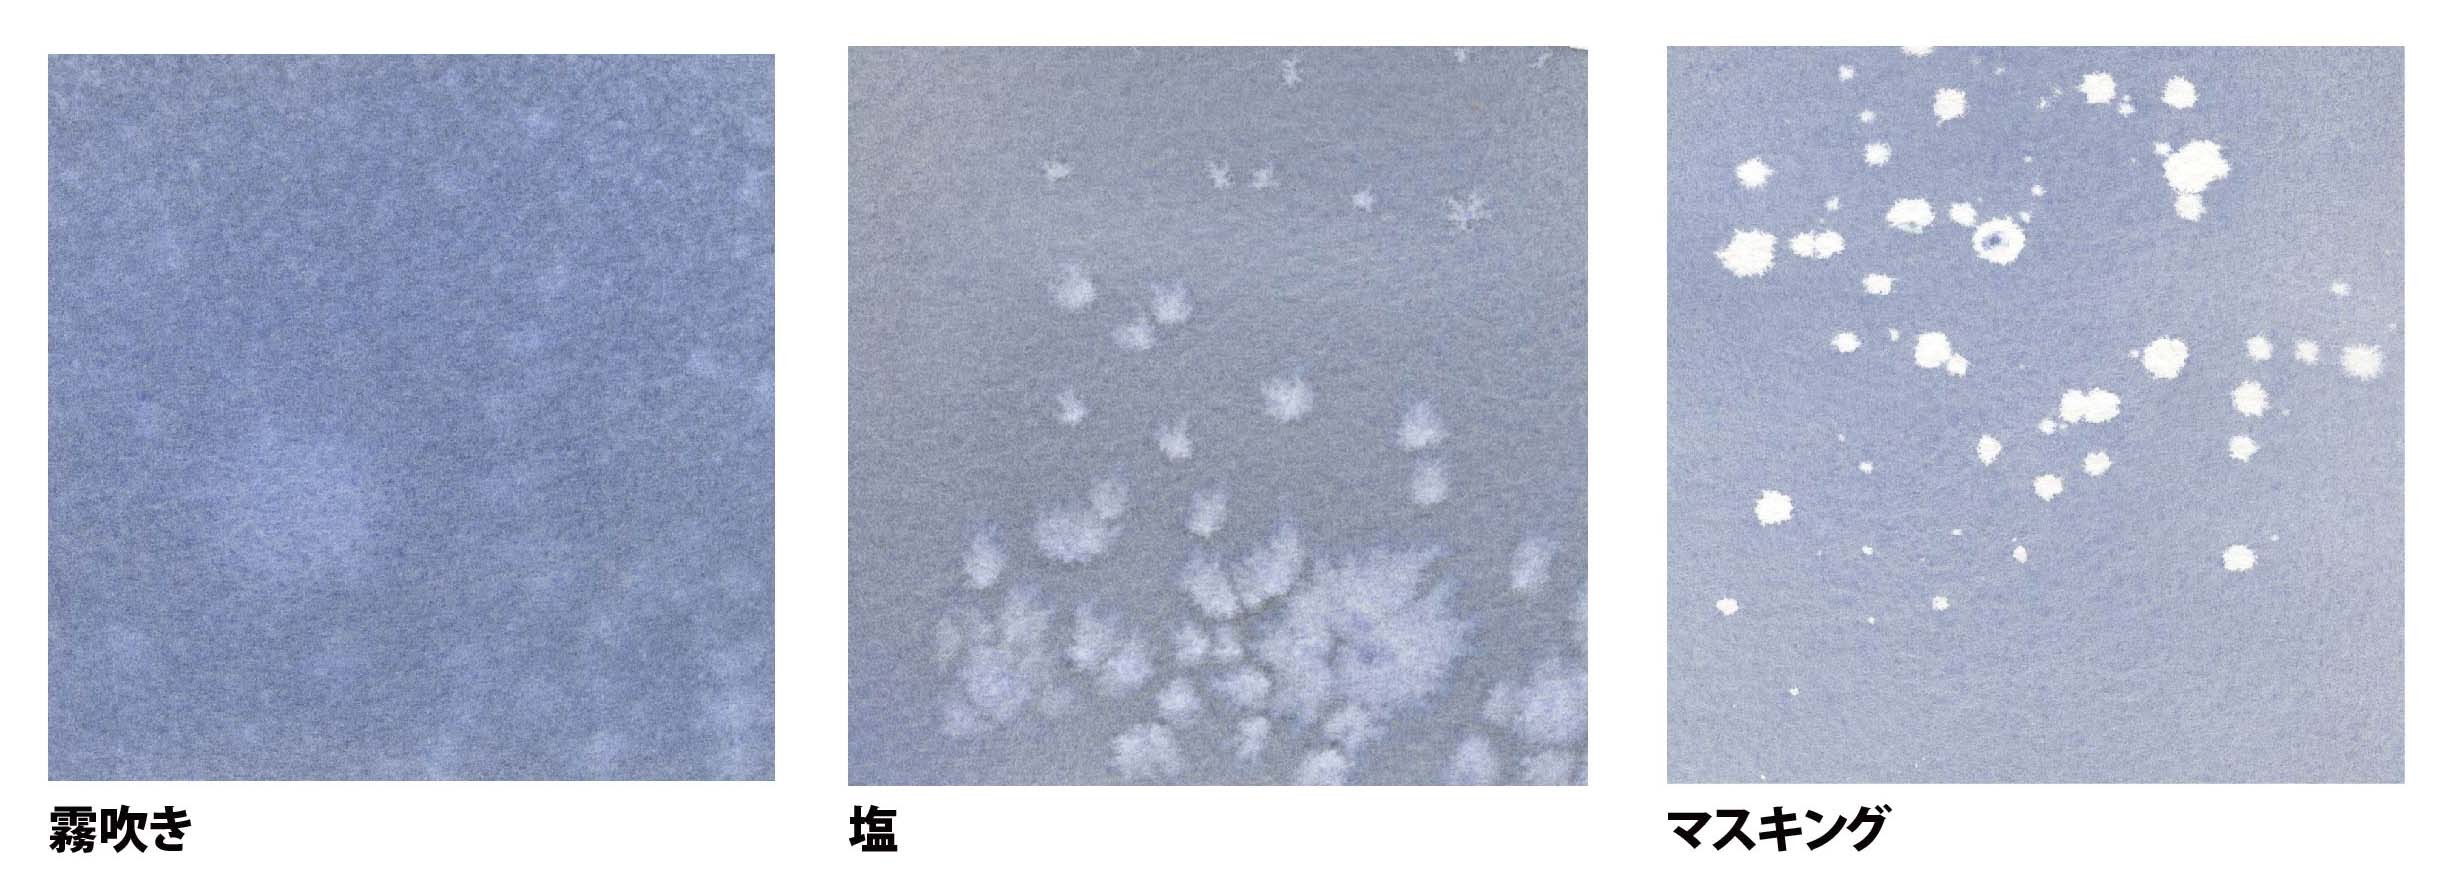 雪の絵 はるさき水彩画blog